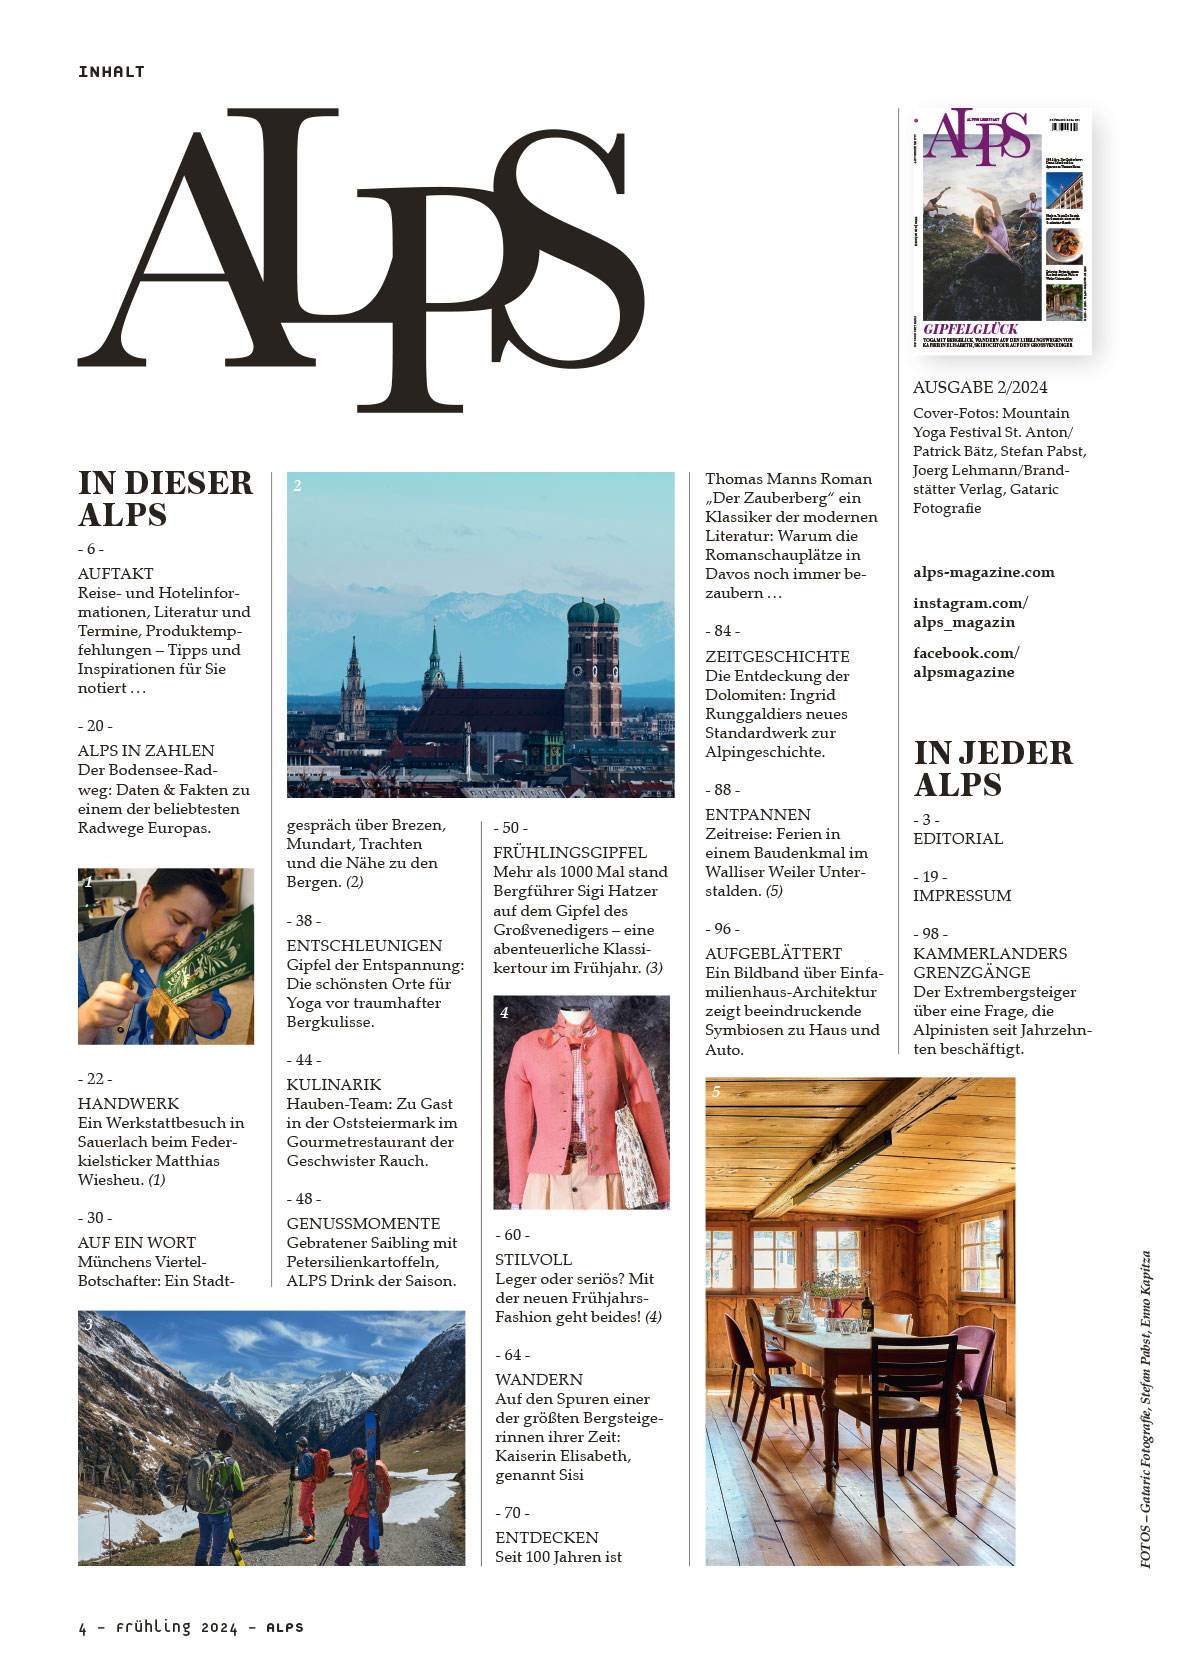 ALPS Magazin #61 / Frühling 2024 Inhalt